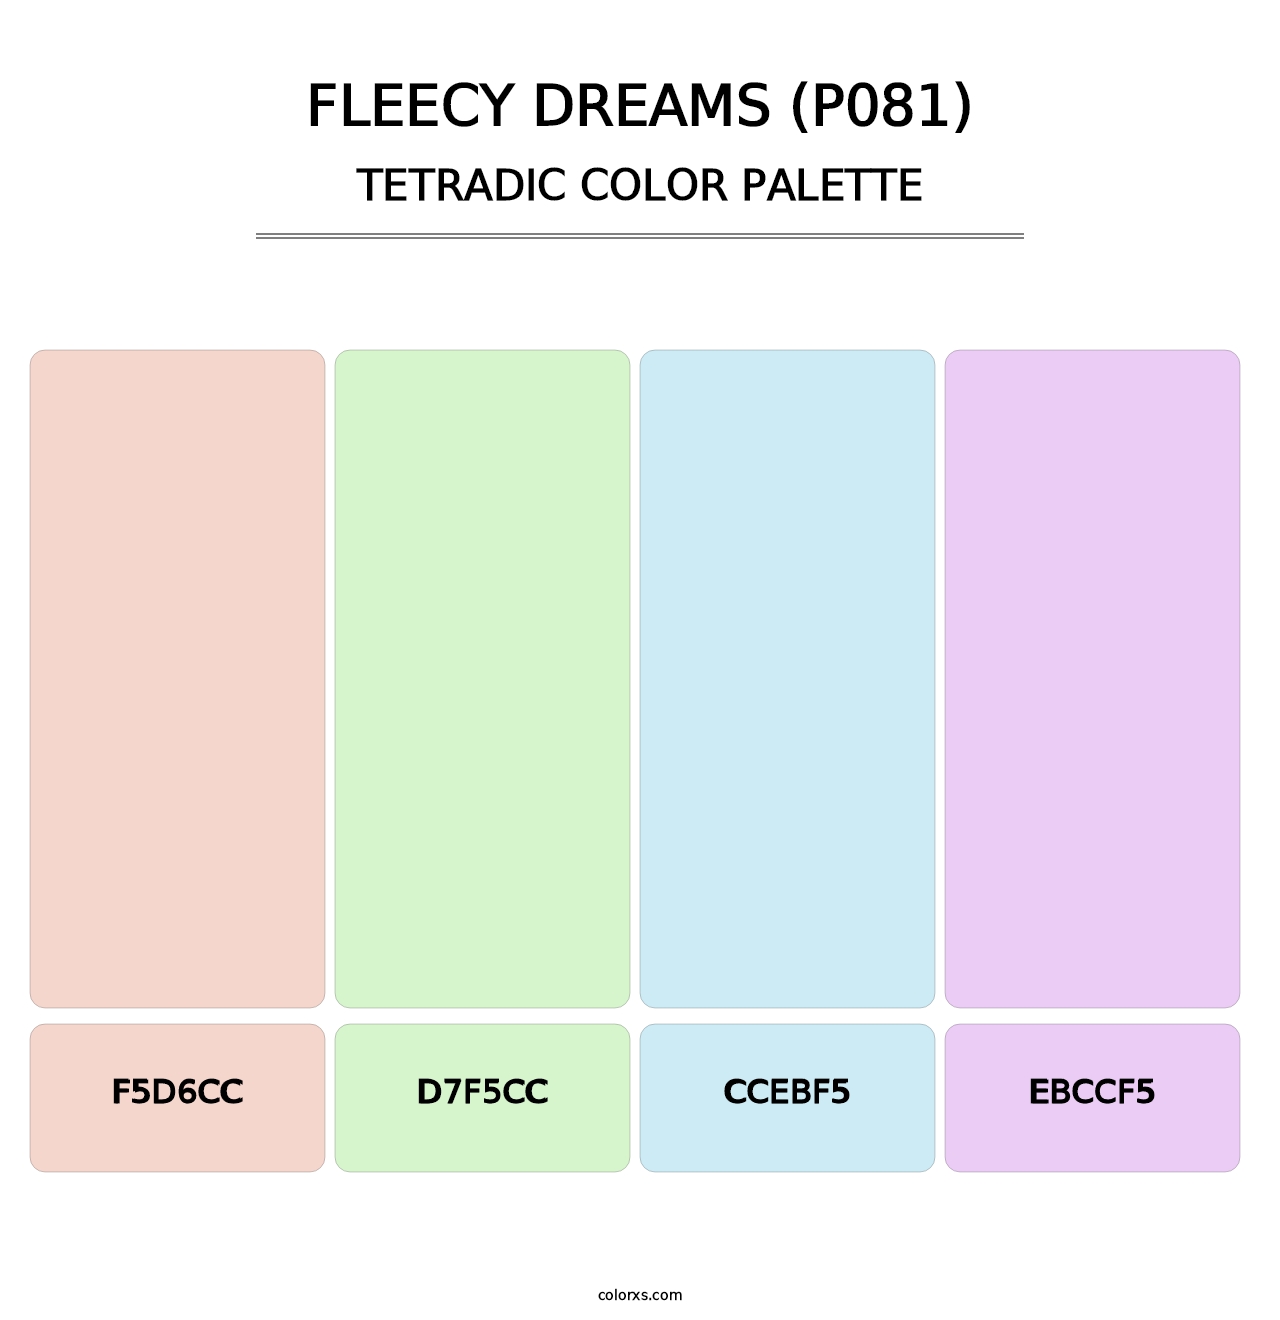 Fleecy Dreams (P081) - Tetradic Color Palette